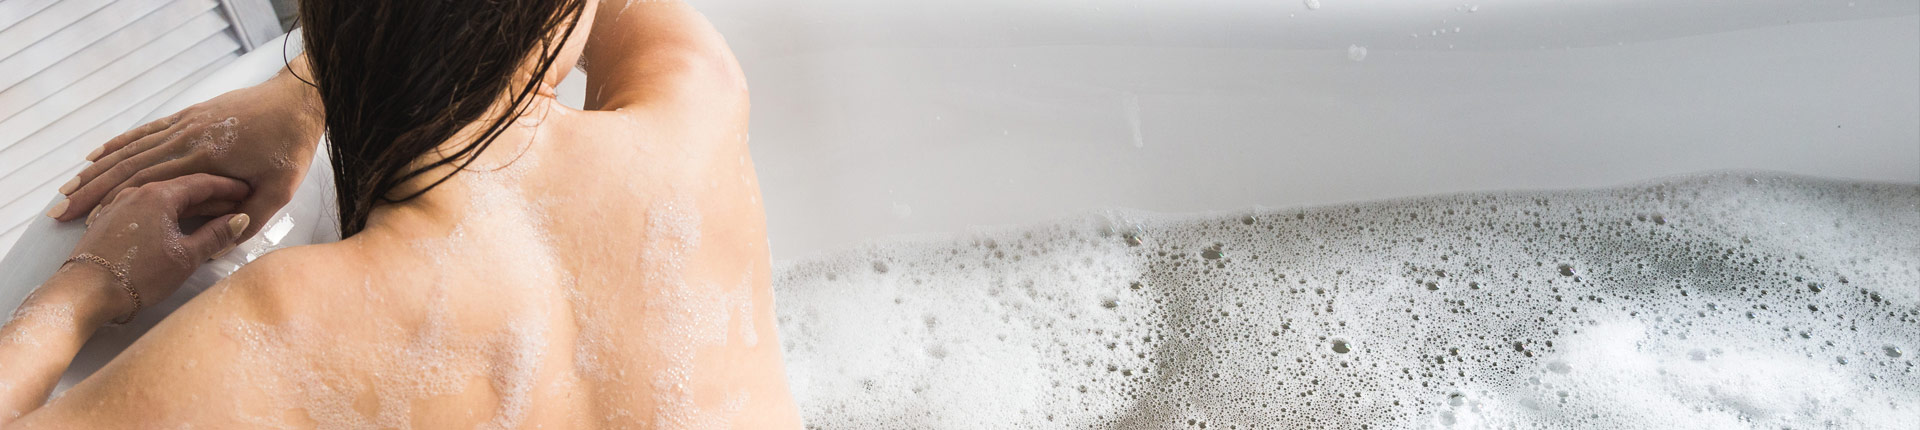 Czy gorące kąpiele zwiększają korzyści z treningów?